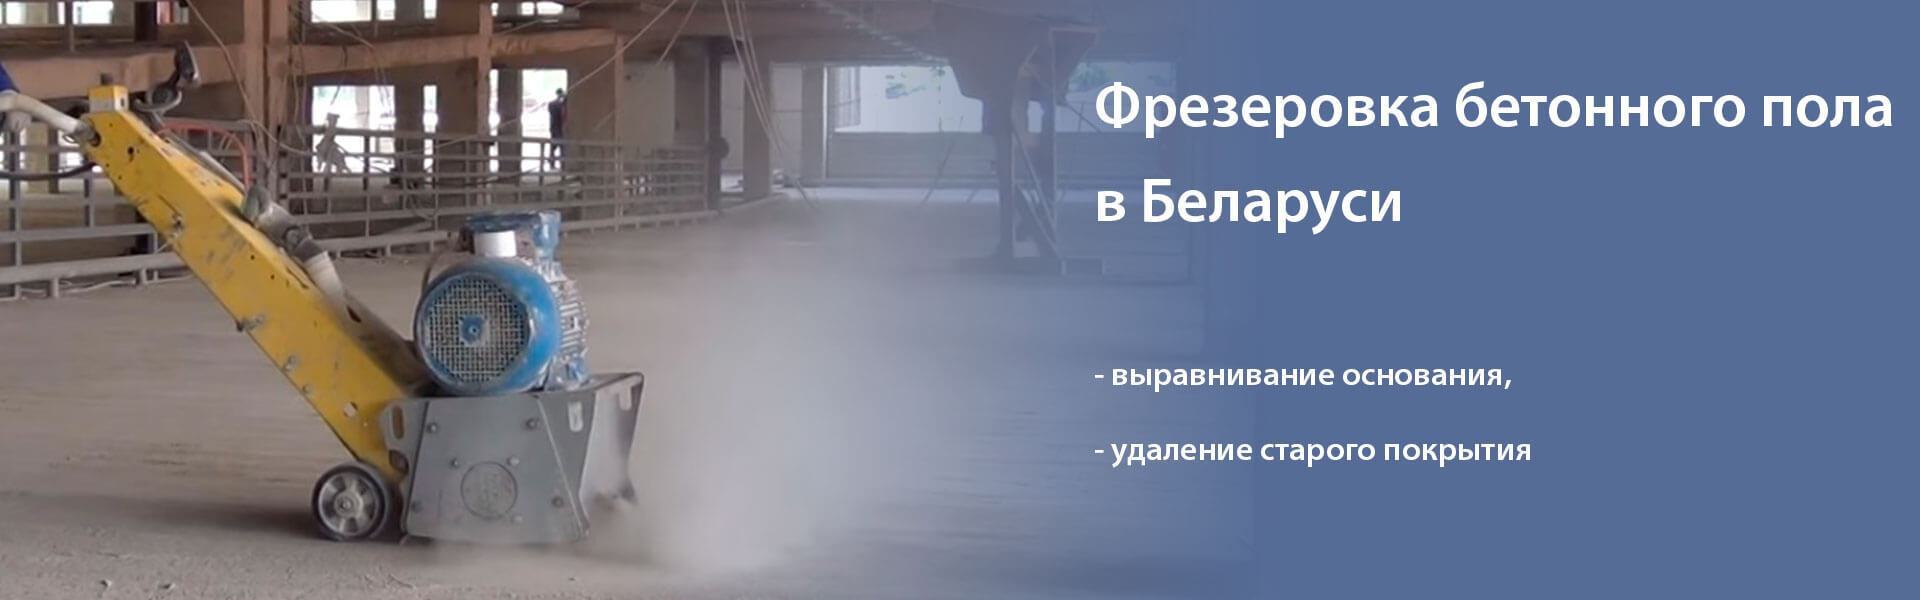 Фрезеровка бетонного пола - услуга компании МилайнТорг в Минске и Беларуси